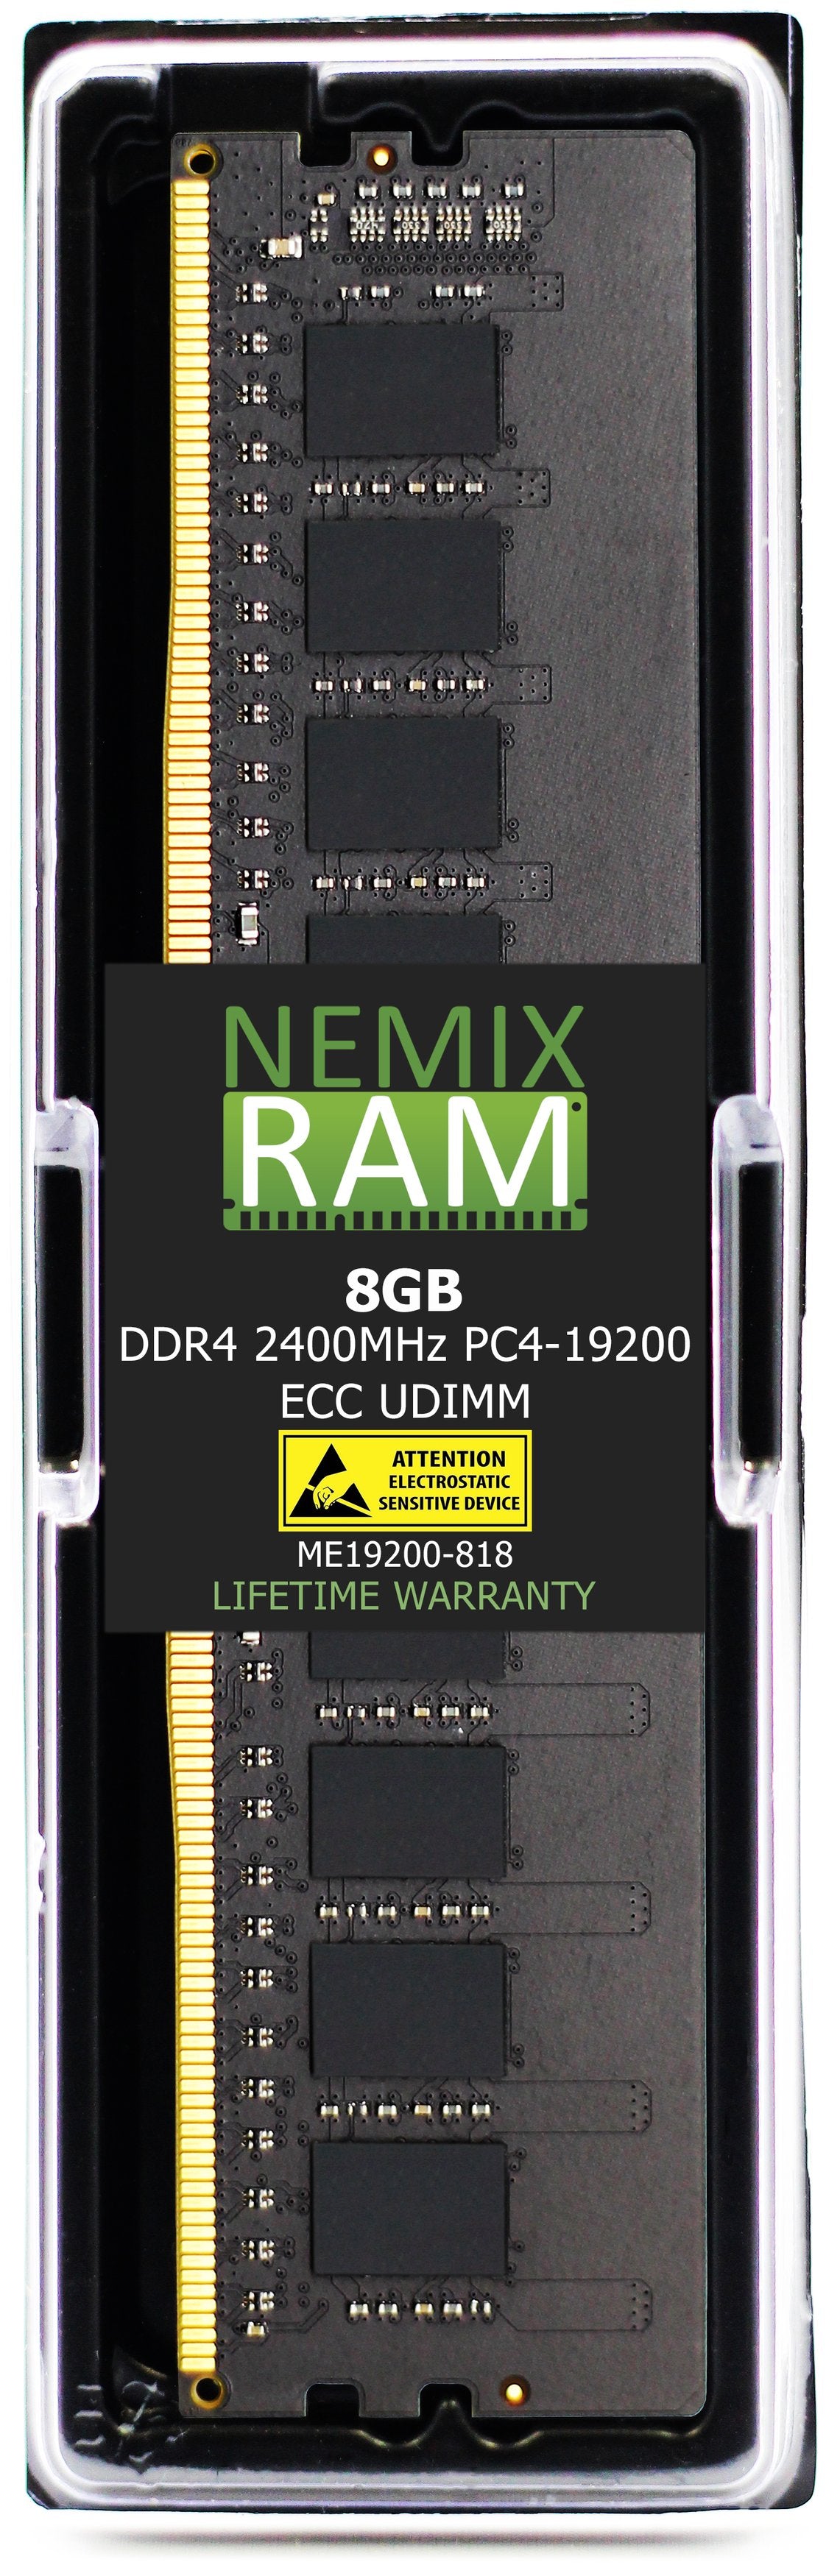 8GB DDR4 2400MHZ PC4-19200 ECC UDIMM Compatible with Supermicro MEM-DR480L-HL01-EU24